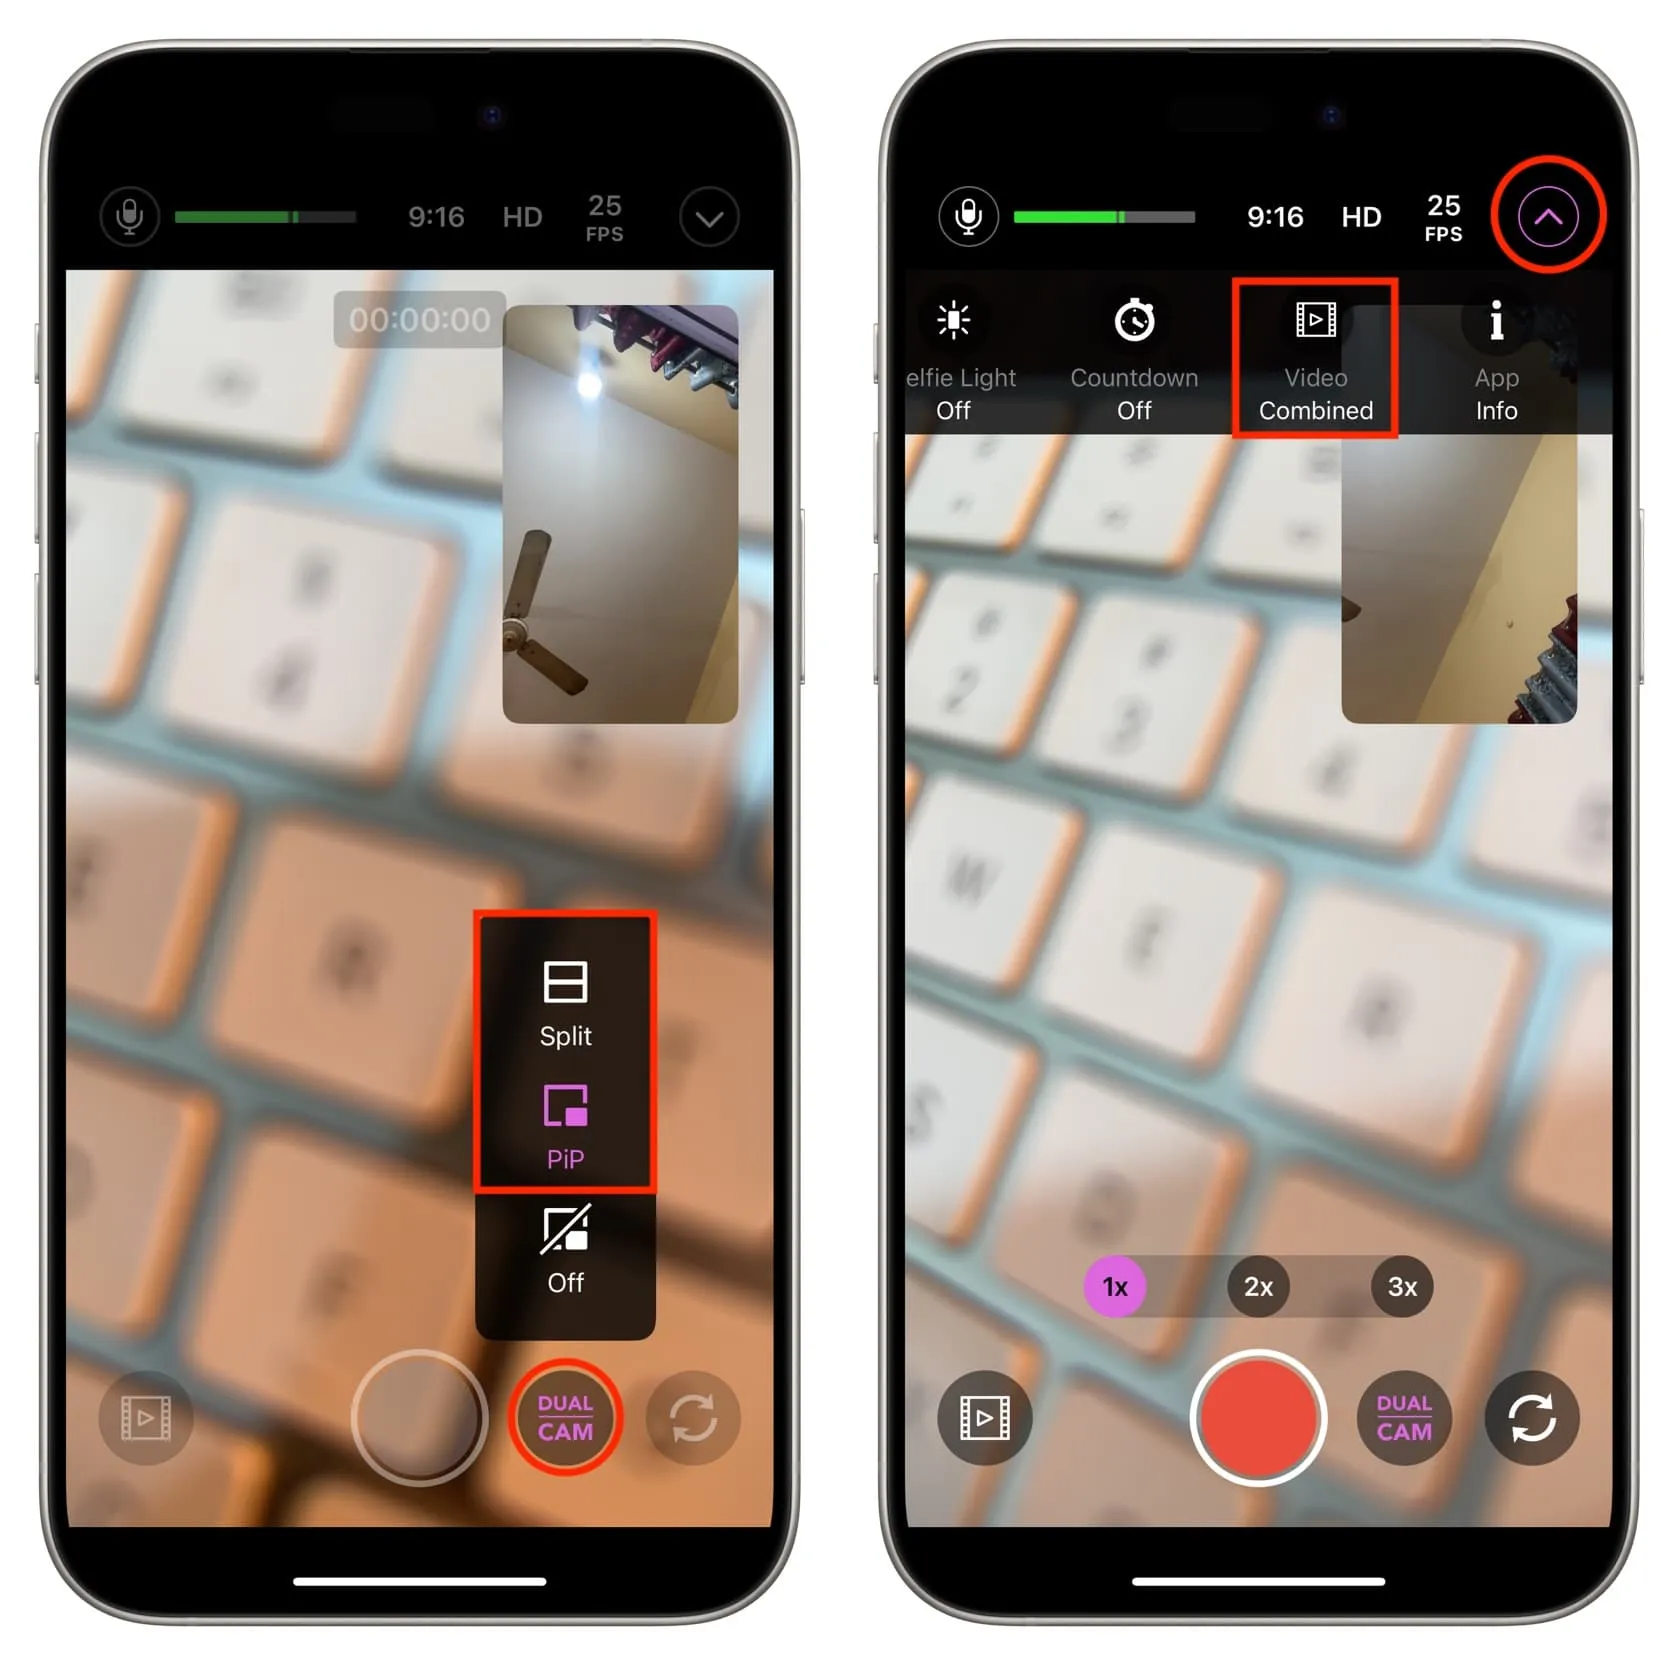 Utilisation de l'application Rode Camera pour enregistrer simultanément avec les caméras avant et arrière de l'iPhone